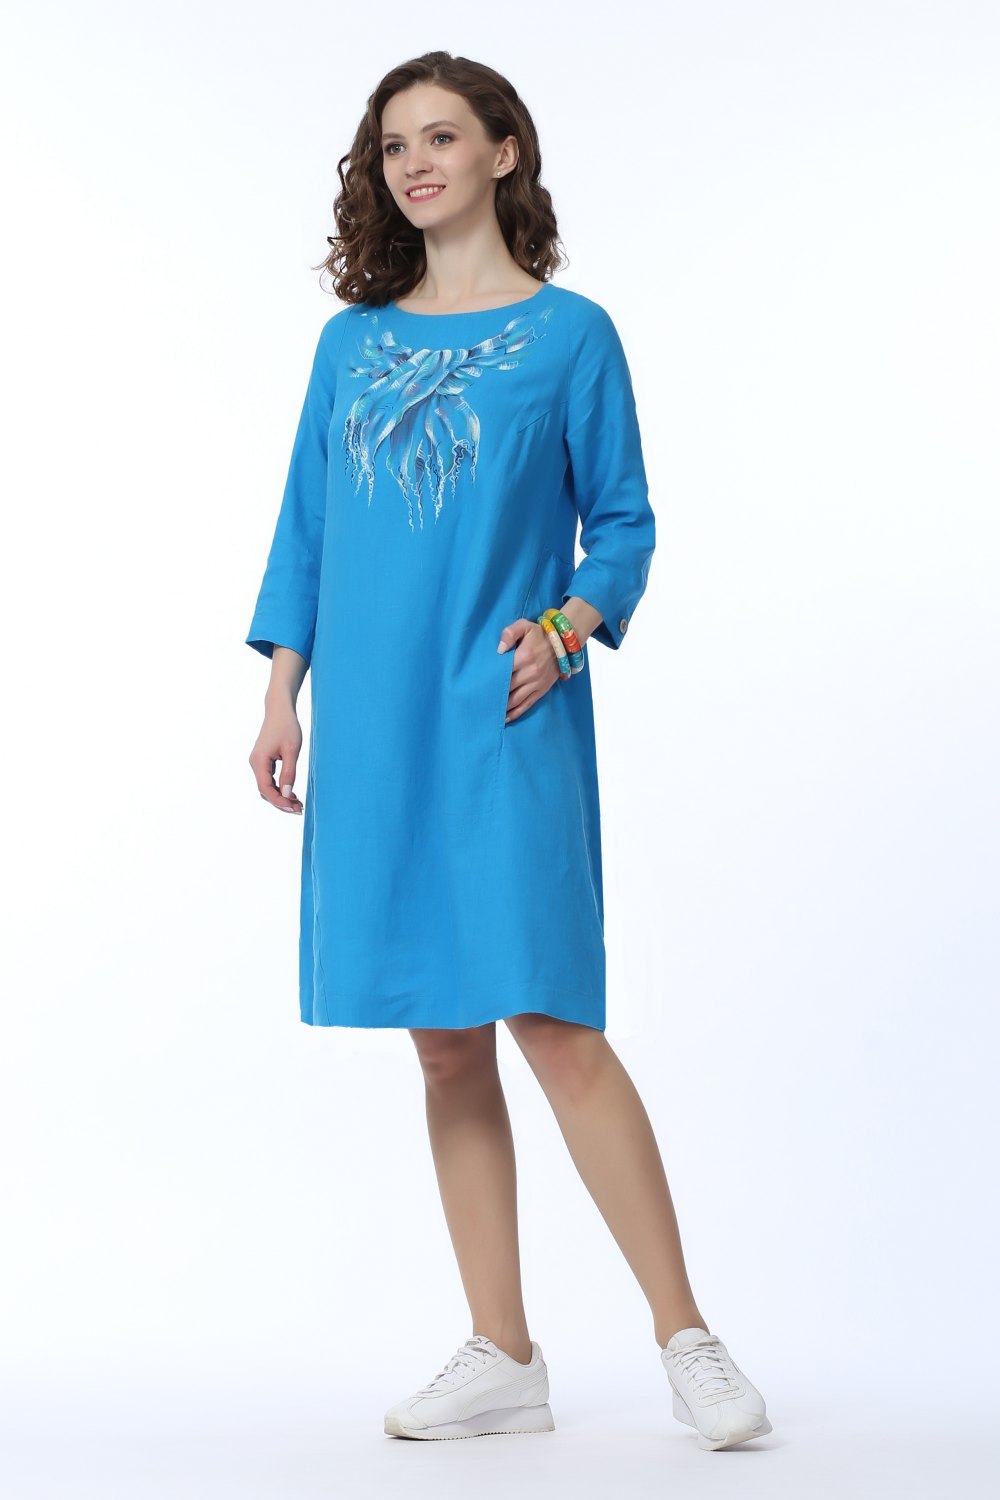 Платье женское "Лаура" модель 459/3 голубой